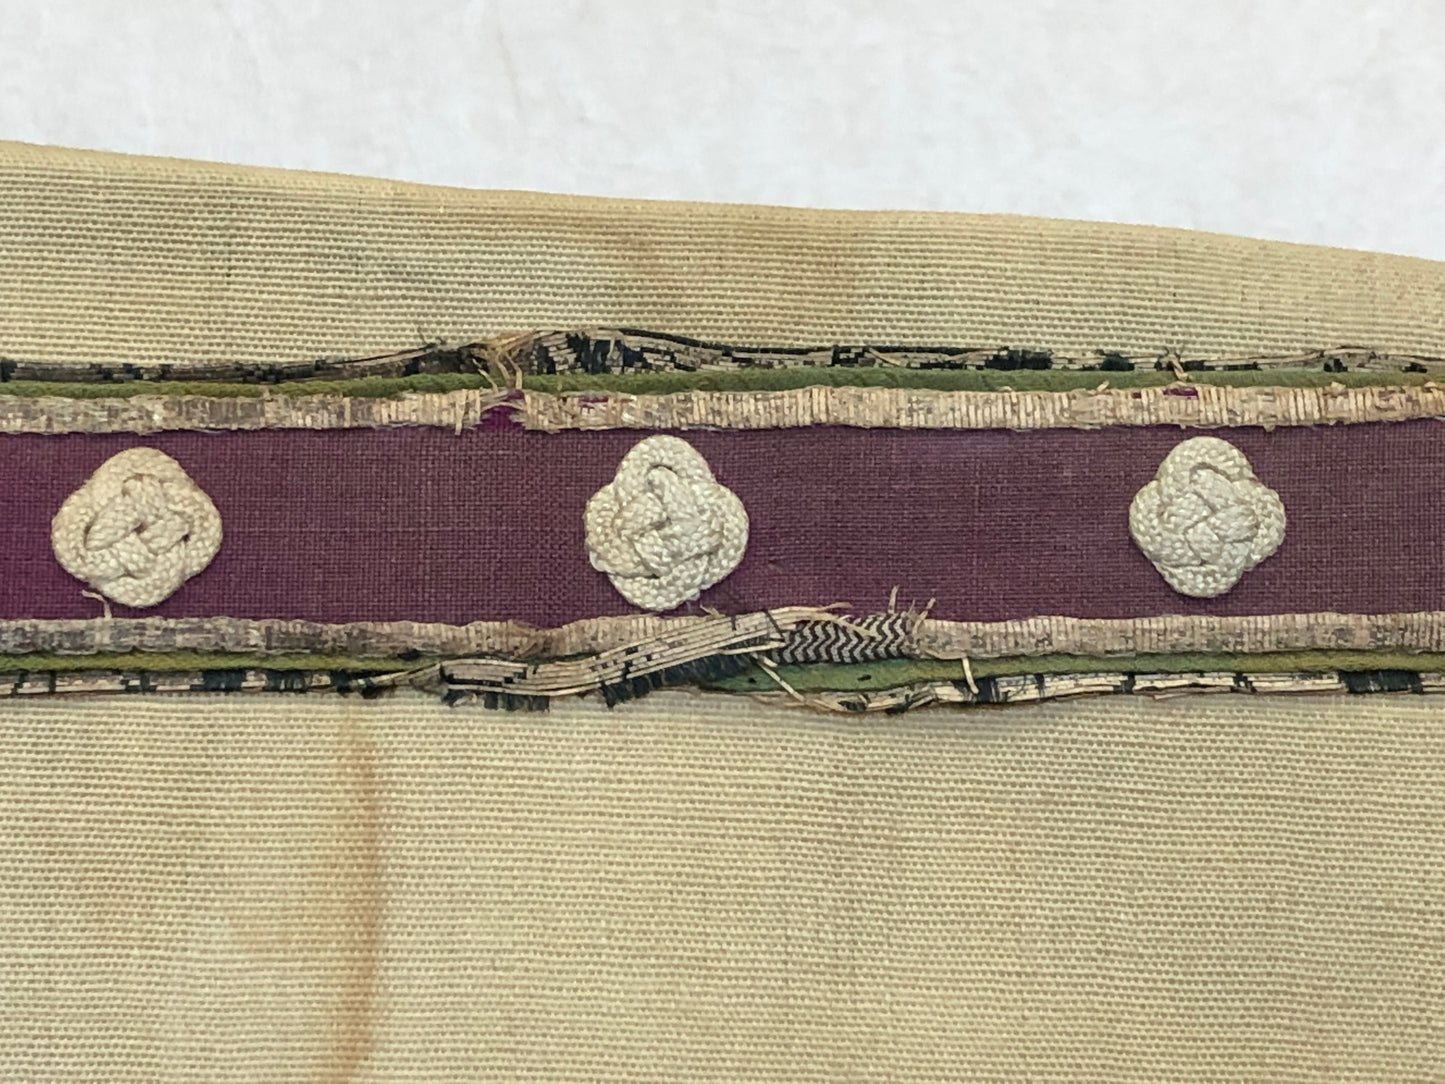 Y3145 JINBAORI Samurai Vest family crest embroidery Sengoku period Japan antique